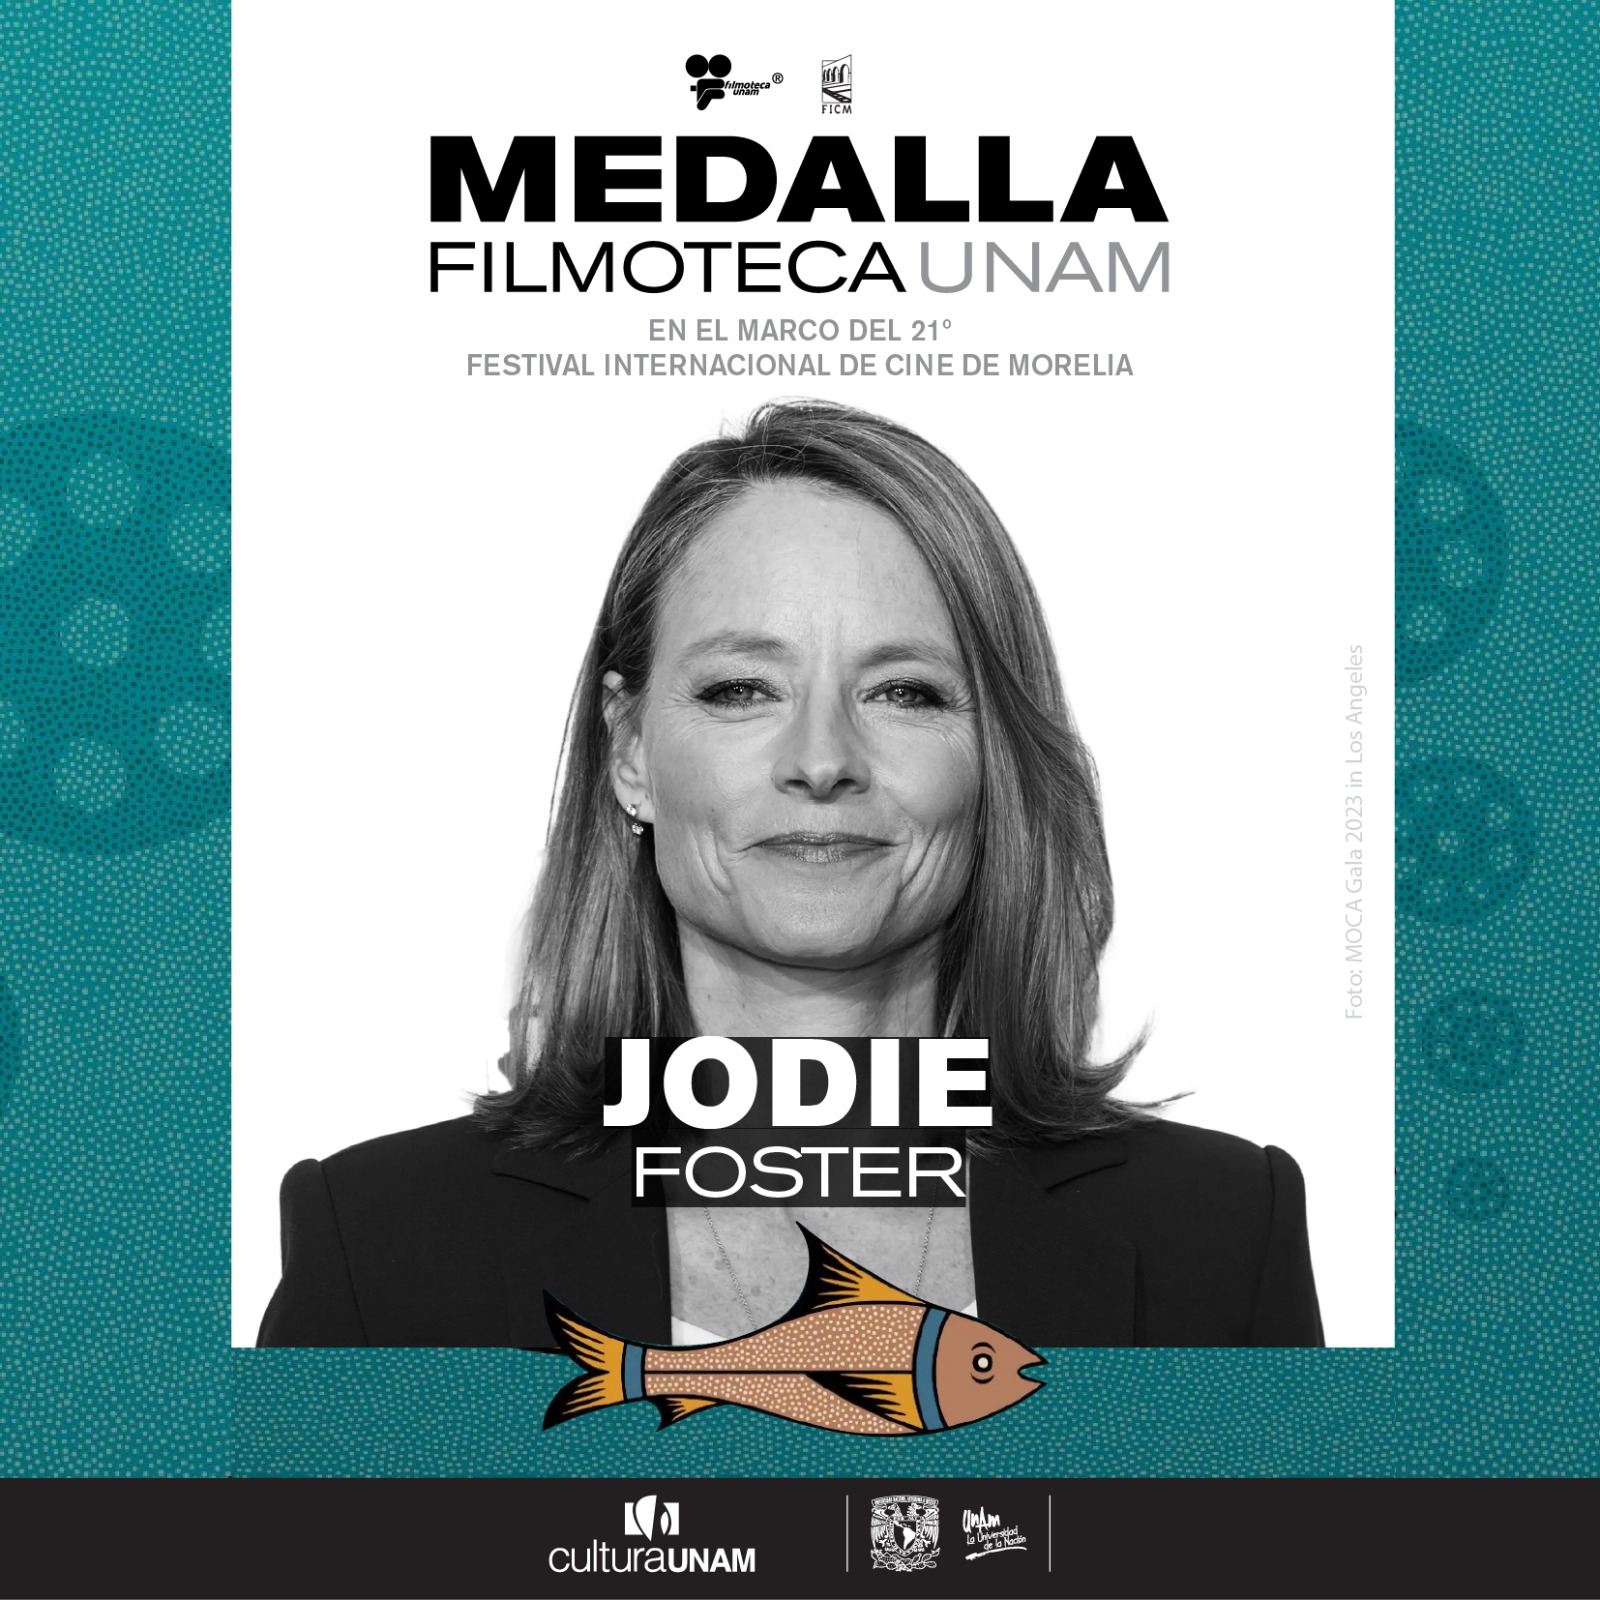 Medalla Jodie Foster